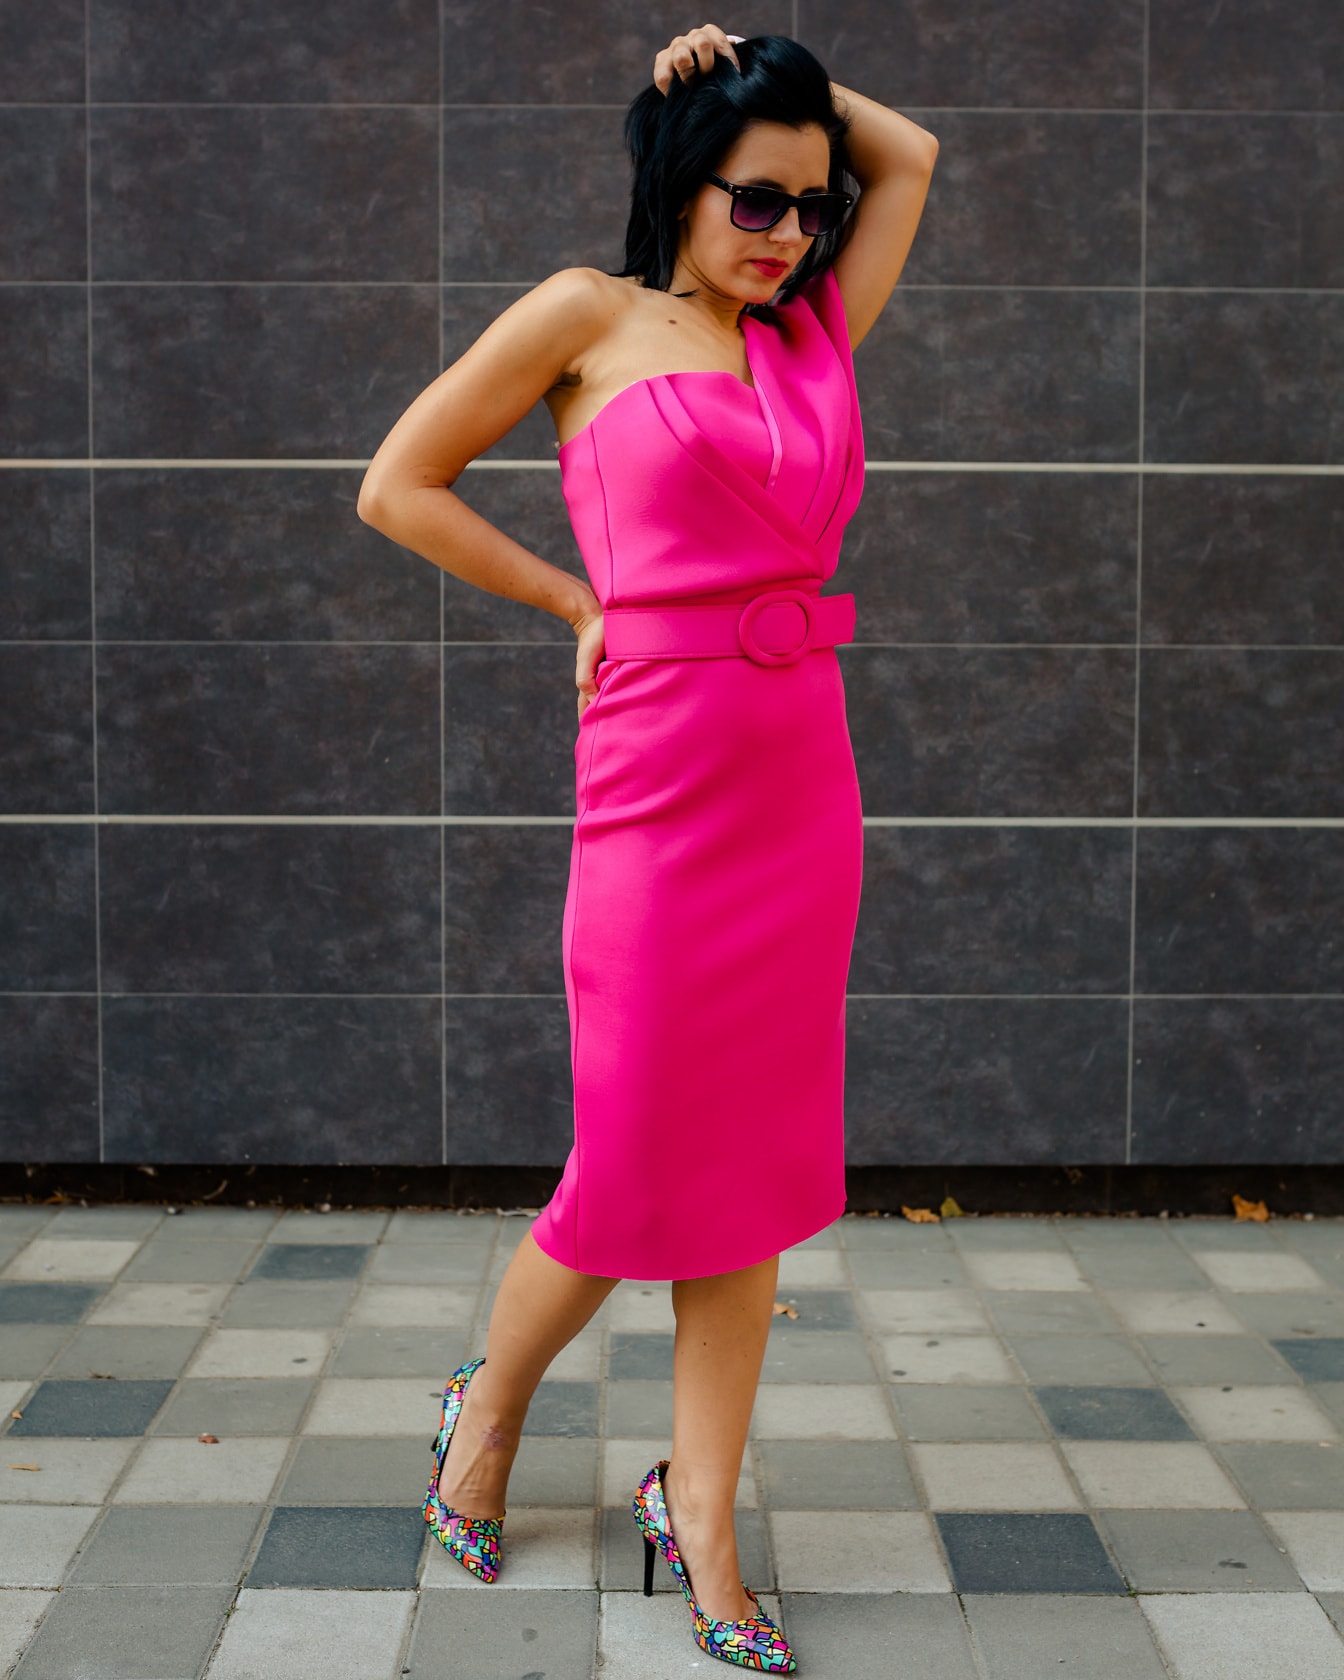 Underbar ung kvinna fotomodell som poserar i en livlig rosa klänning